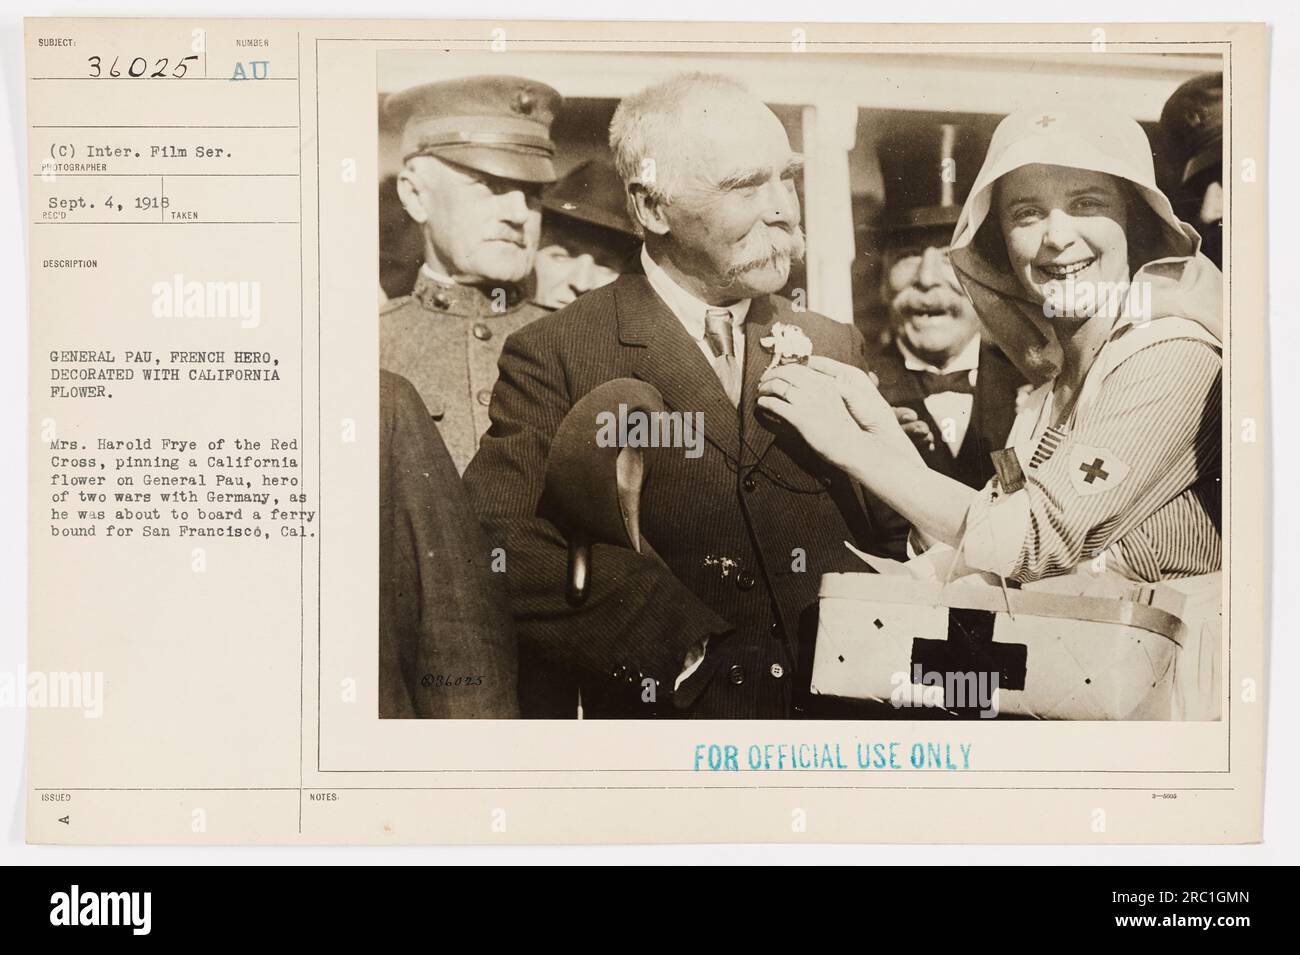 Mrs. Harold Frye vom Roten Kreuz steckt eine kalifornische Blume auf General Pau, einen dekorierten französischen Helden aus zwei Kriegen mit Deutschland. Das Foto wurde am 4. September 1918 aufgenommen, als General Pau eine Fähre nach San Francisco, Kalifornien, bestieg. Dieses Bild hat die Identifikationsnummer 111-SC-36025. Stockfoto